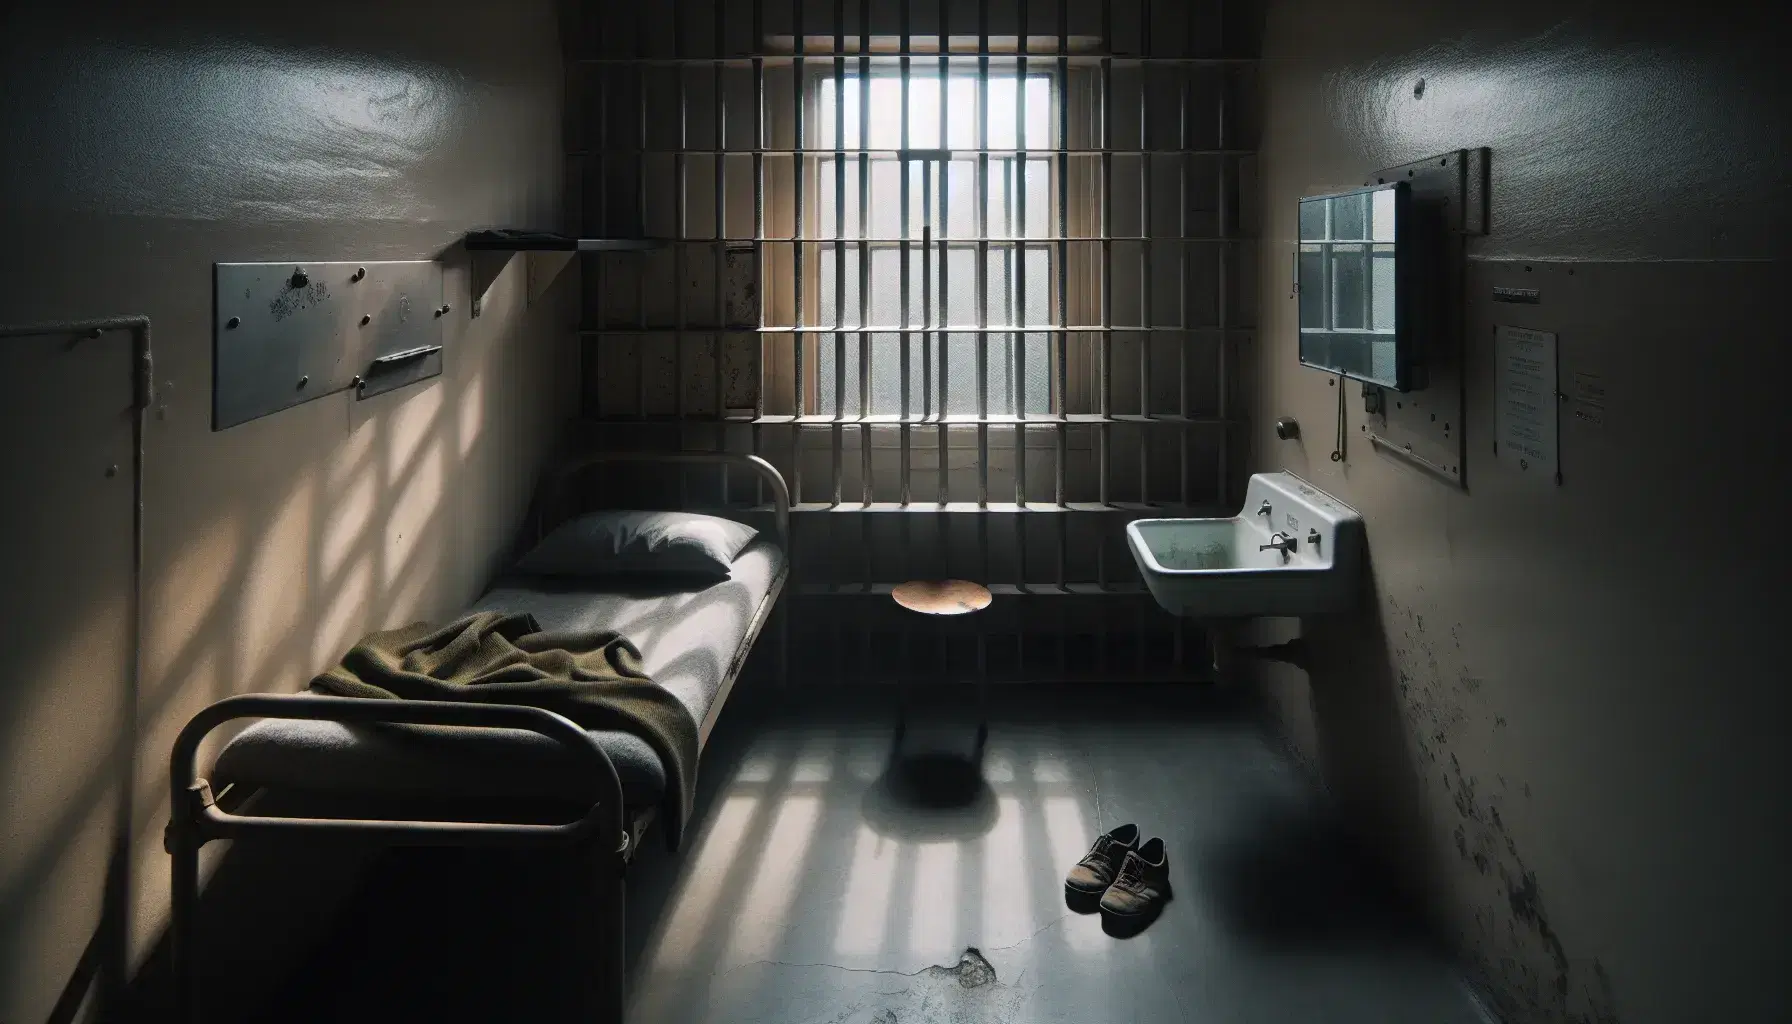 Celda de prisión con cama metálica y colchón gris, manta oliva desgastada, zapatos de lona y lavabo blanco, bajo luz natural suave.